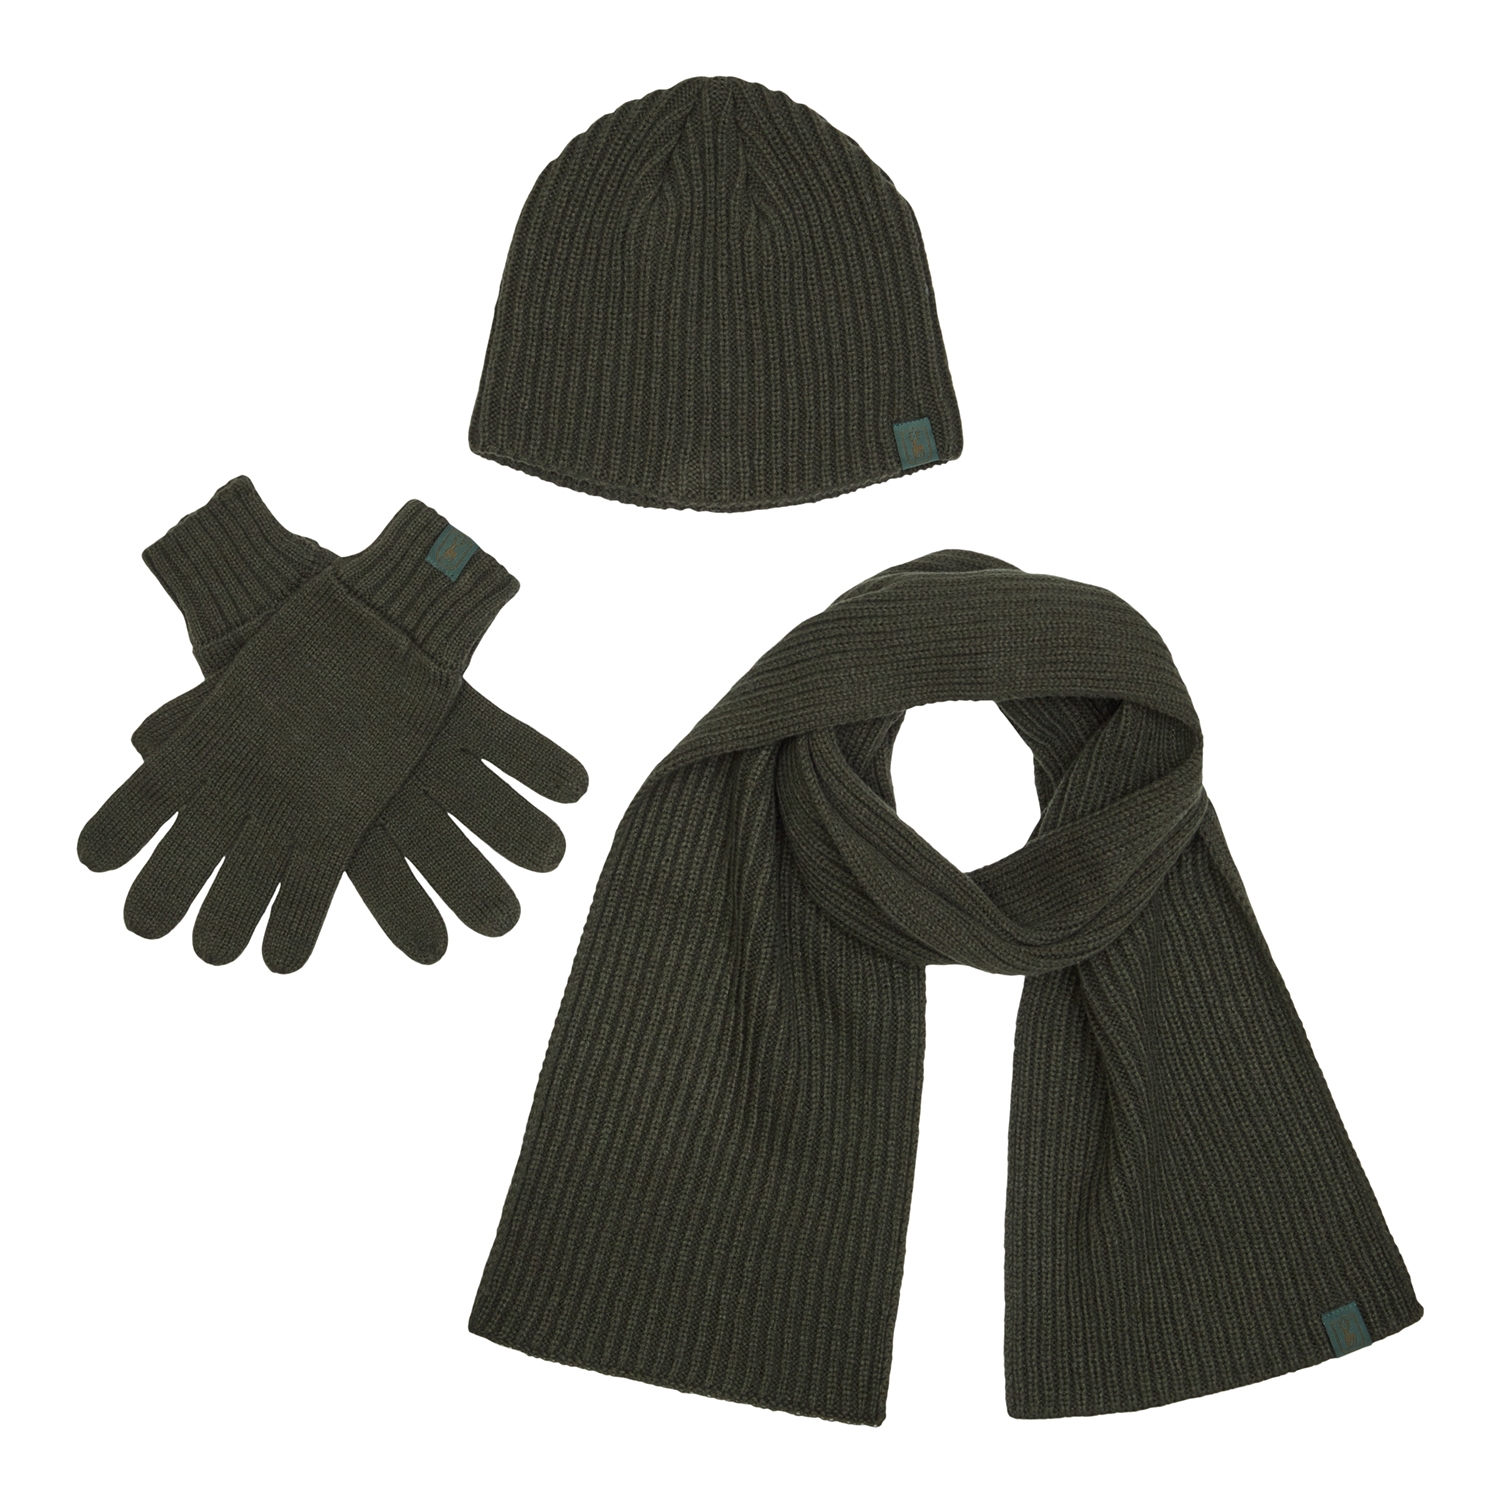 Zestaw: czapka, szalik, rękawiczki – 3-pcs. Winter set 9021 Green